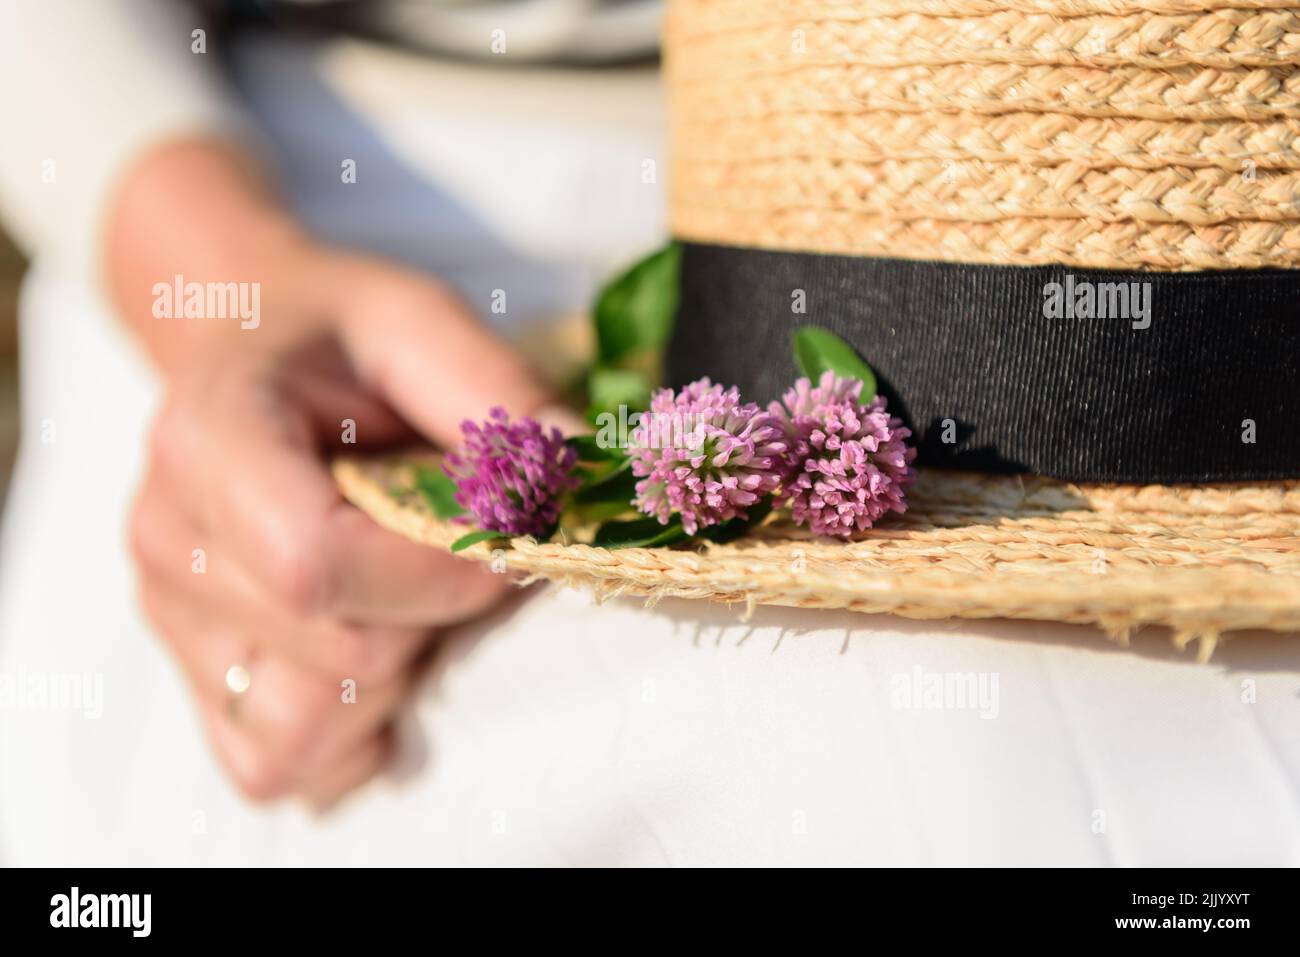 Nahaufnahme von drei violetten Kleeblüten auf einem gelben Strohhut, der auf dem Schoß einer verheirateten Frau liegt, selektiver Fokus. Stockfoto